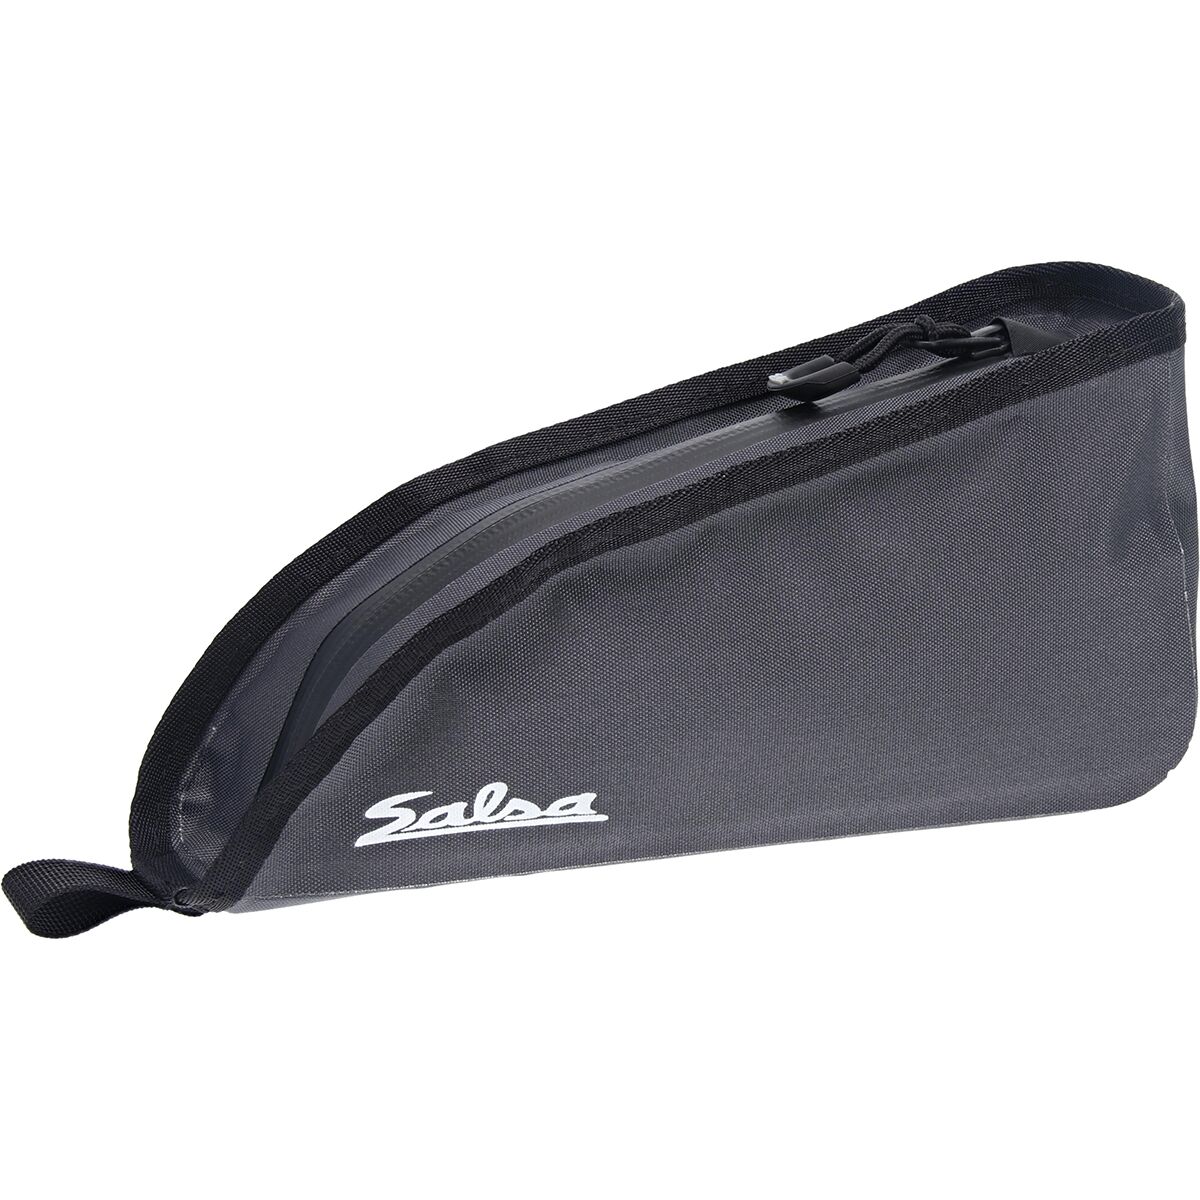 Mounthood Laptop Messenger Bag with Handle / Shoulder Sling Bag for Men &  Women - 15 Inch - Priam Tan/Black(007463) | Fashion